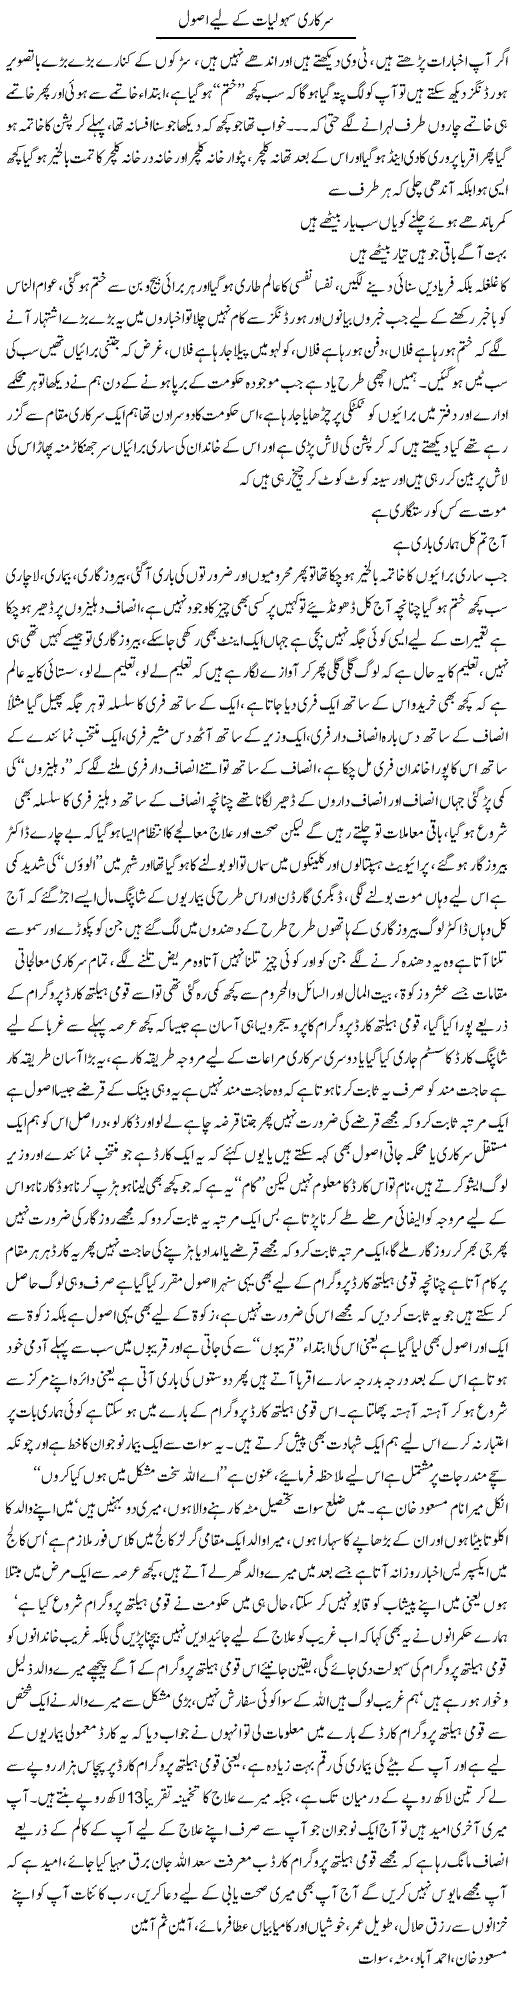 Sarkari Sahuliat Ke Lye Asool | Saad Ullah Jan Barq | Daily Urdu Columns